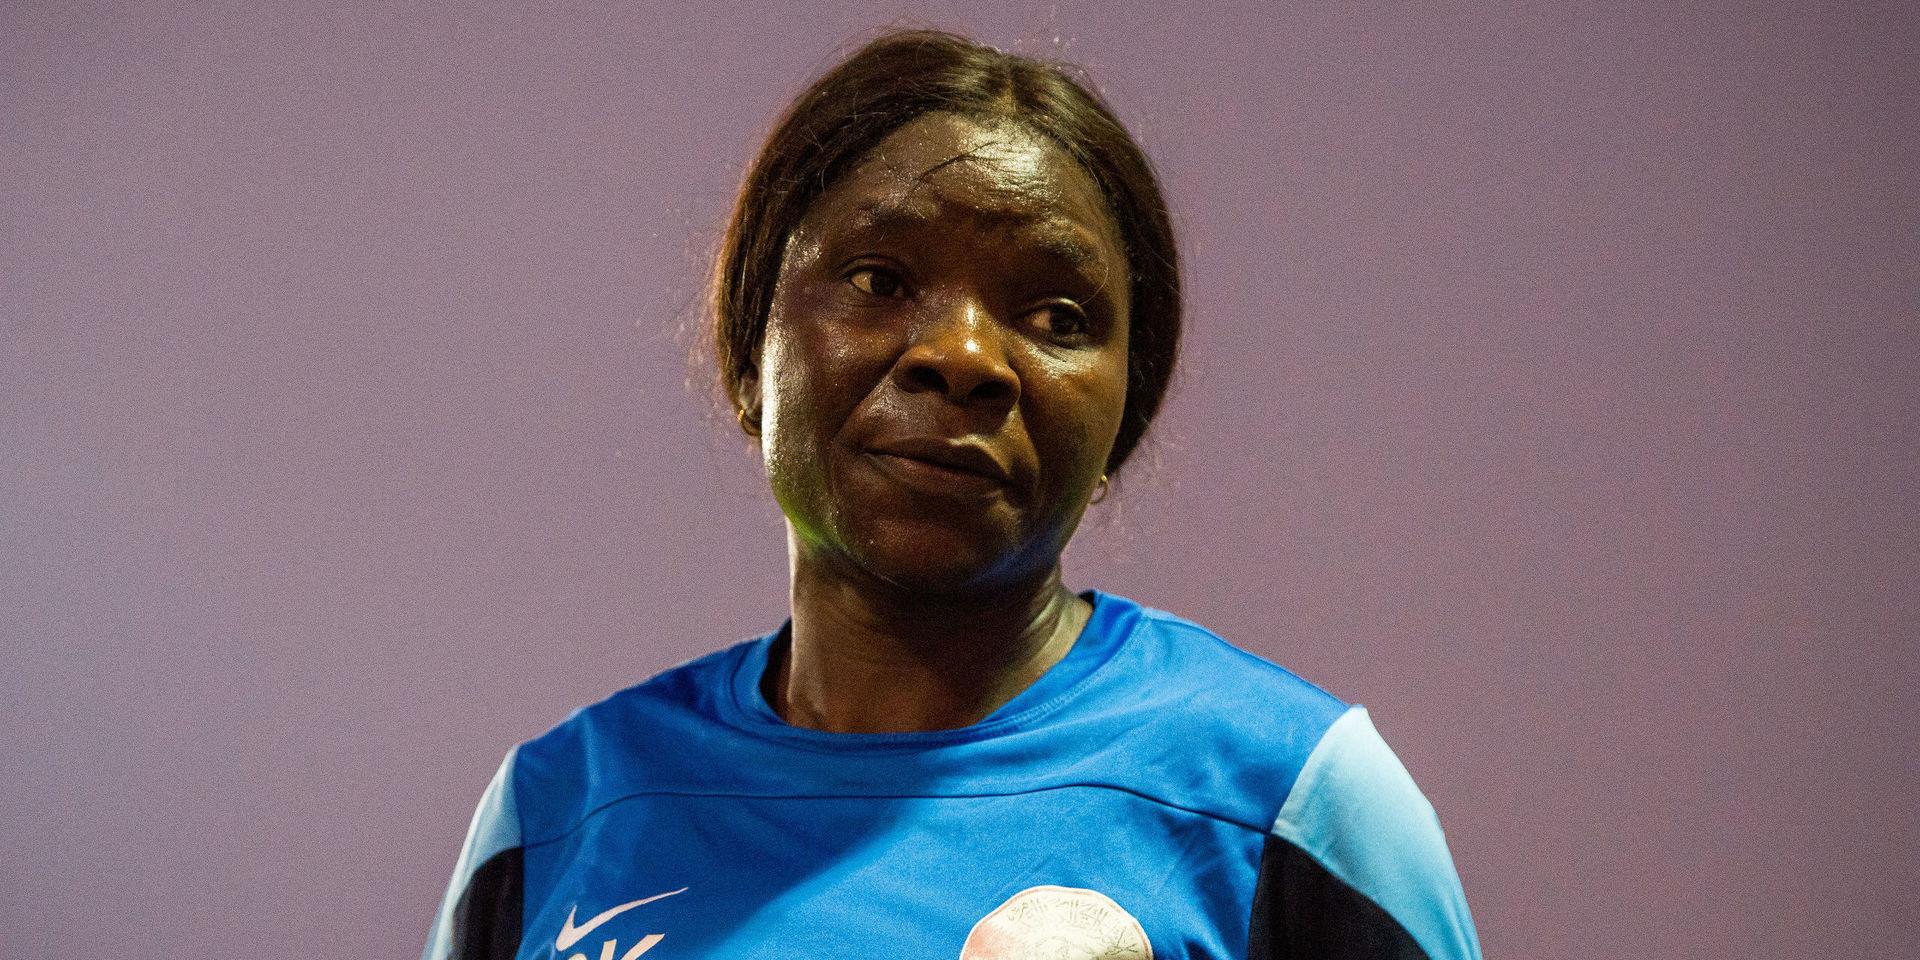 Gloria Kwalbe är uppvuxen på den nigerianska landsbygden och kom till Qatar 2009 som spelare. Efter att i perioder varit utan både visum och pengar har hon sedan 2016 titeln förbundskapten för det qatariska dam- och flicklandslaget. 